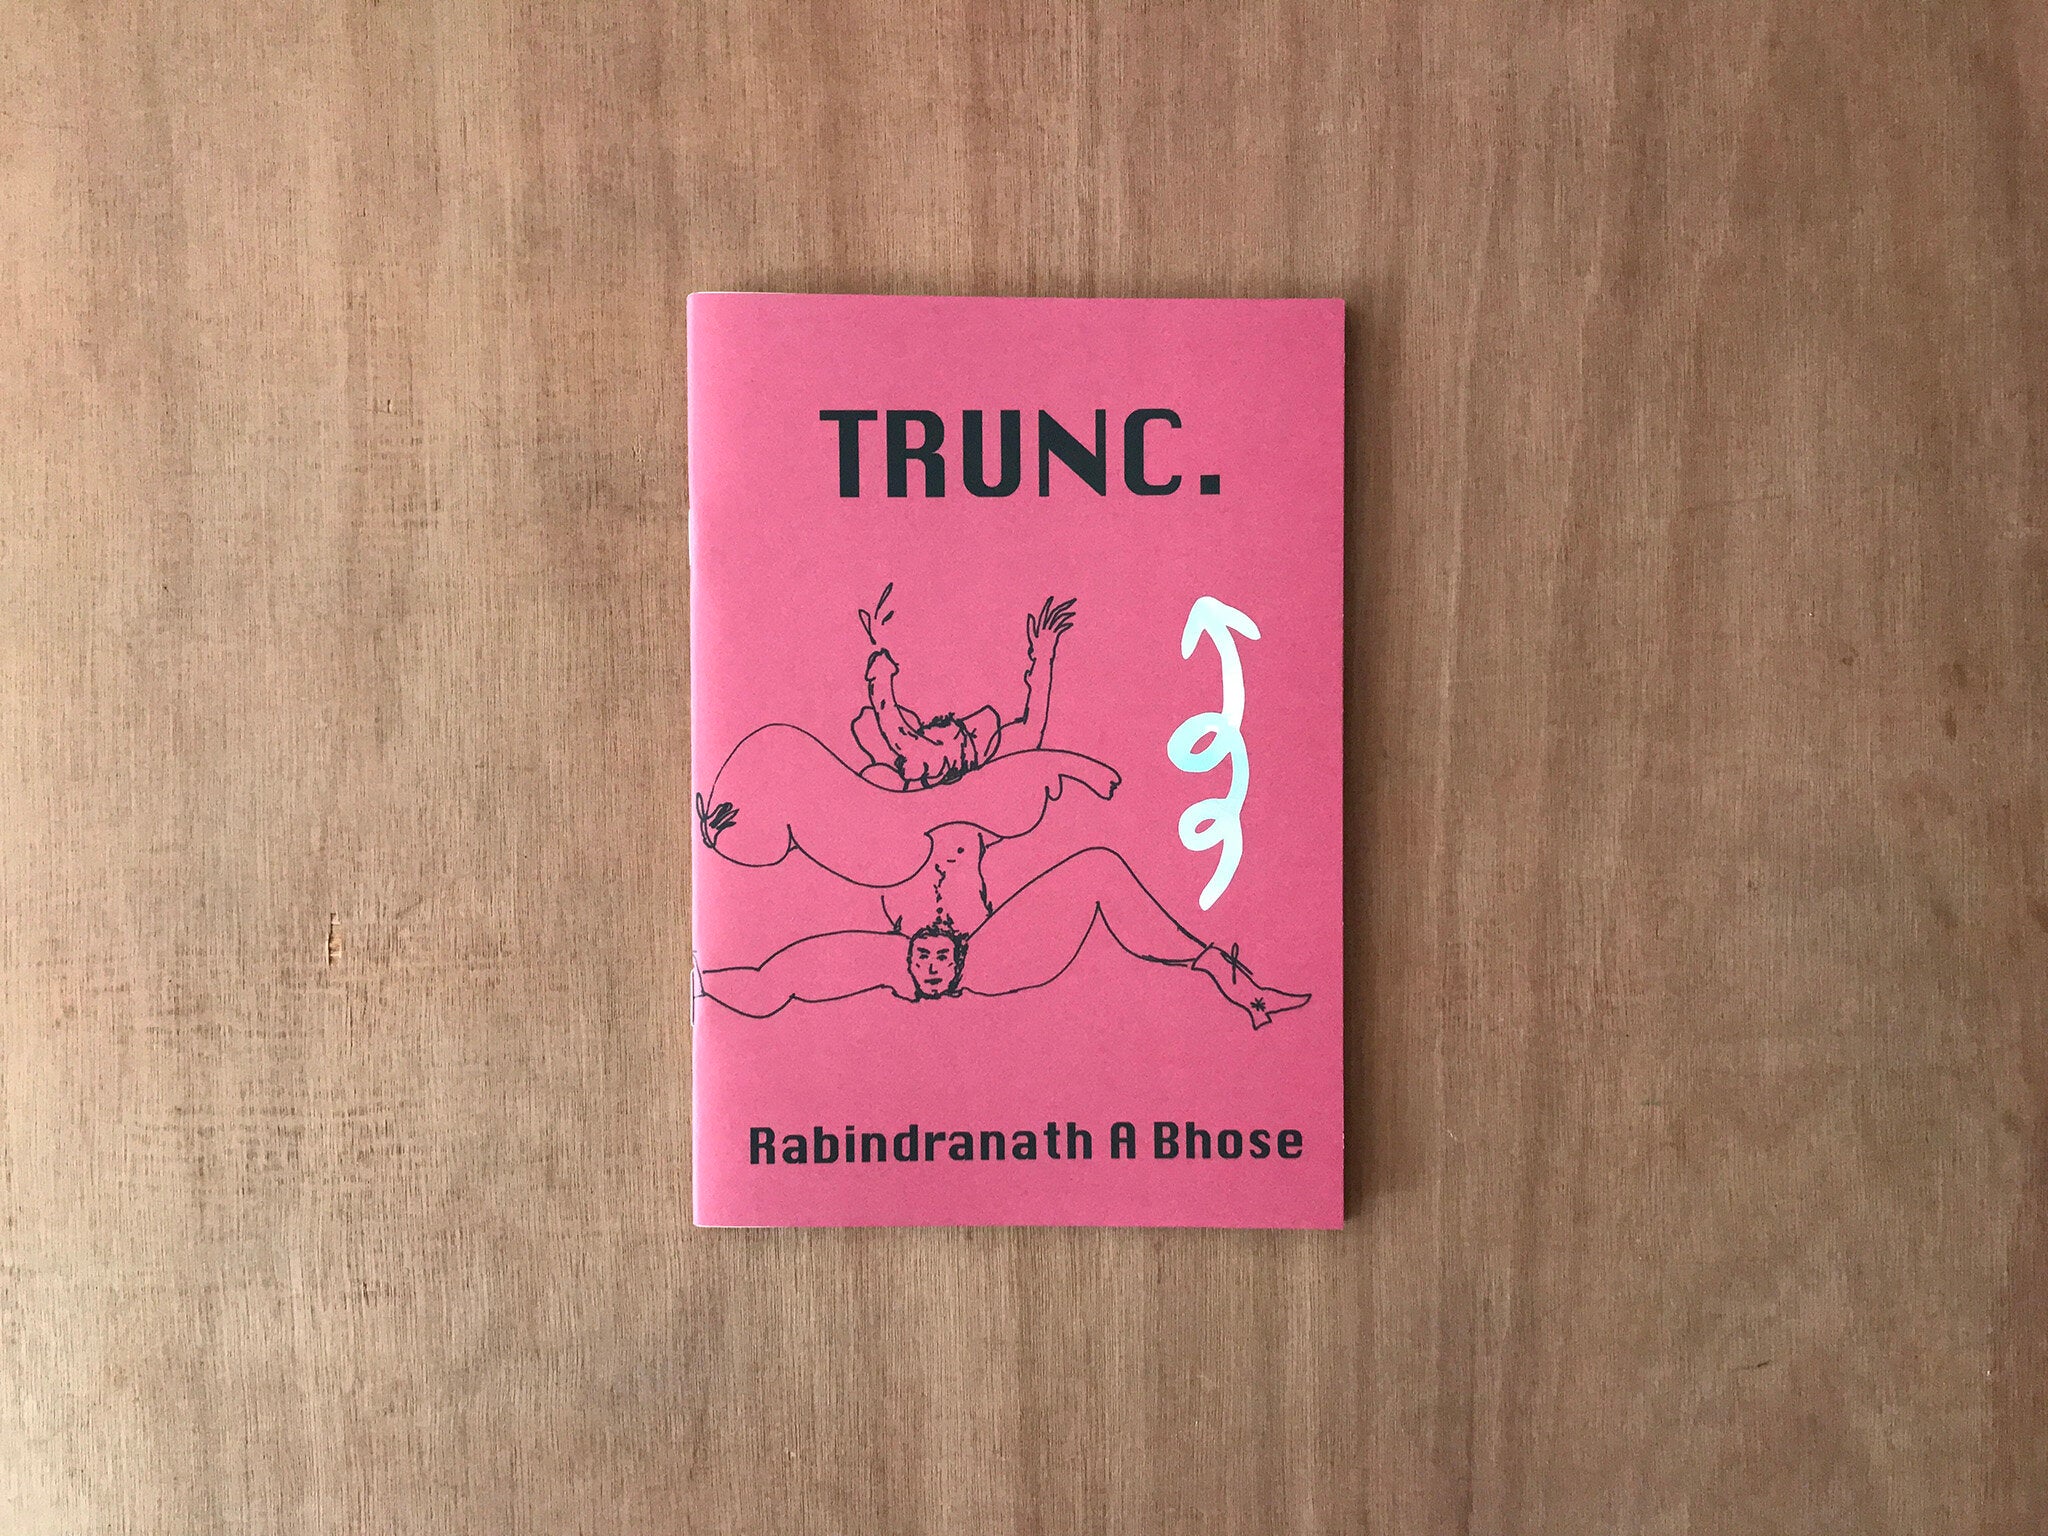 TRUNC. by Rabindranath A Bhose